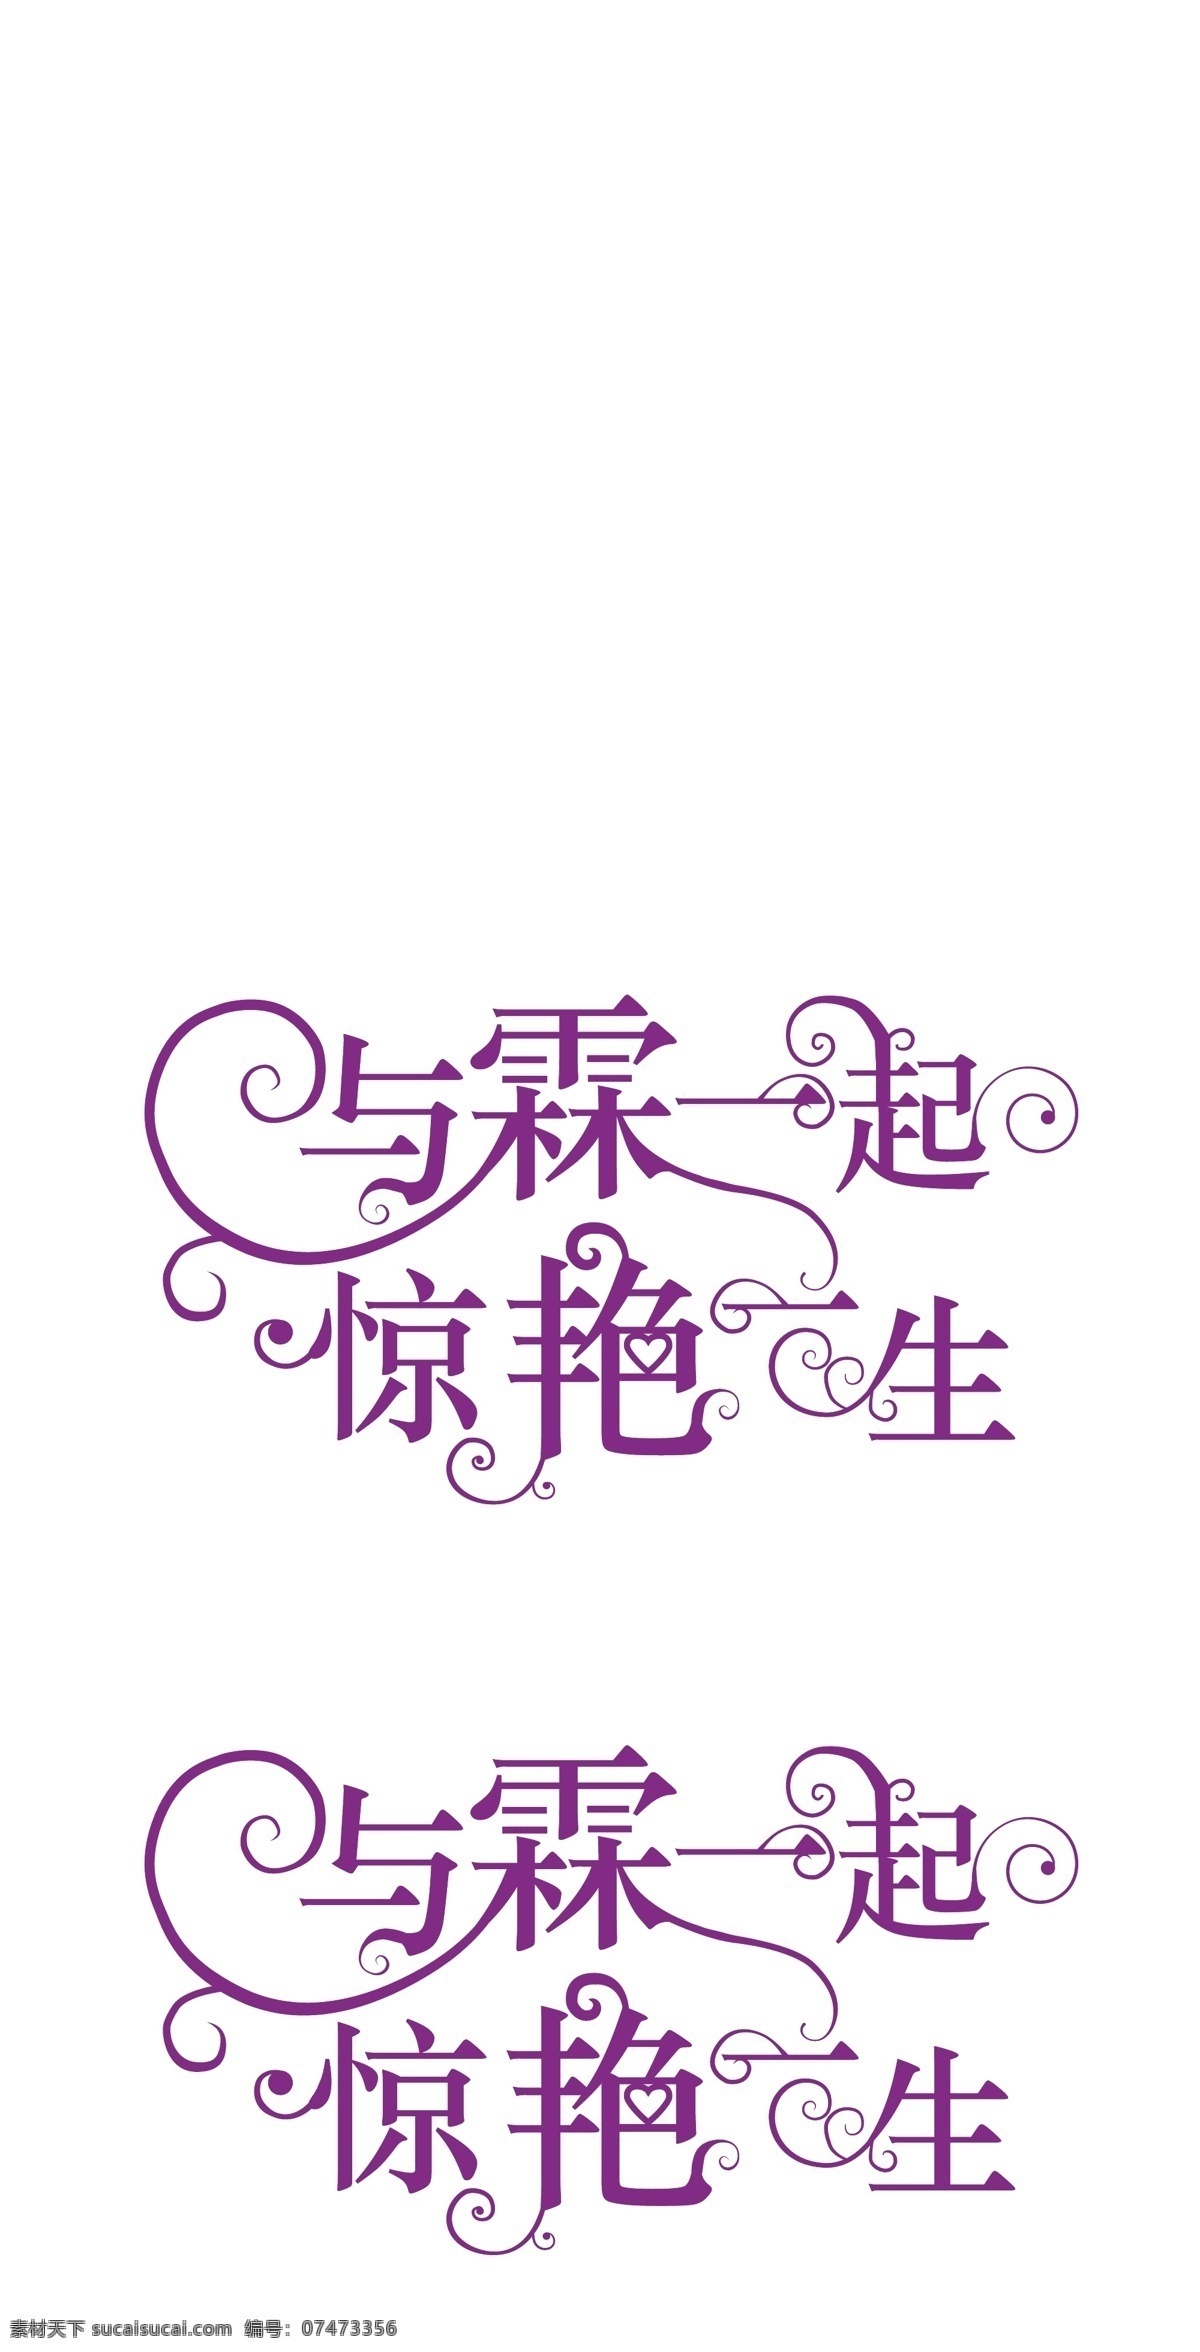 与霖一起 惊艳一生 婚礼logo 花纹 艺术字 字体造型 文字美化 婚礼 婚庆 字体 矢量